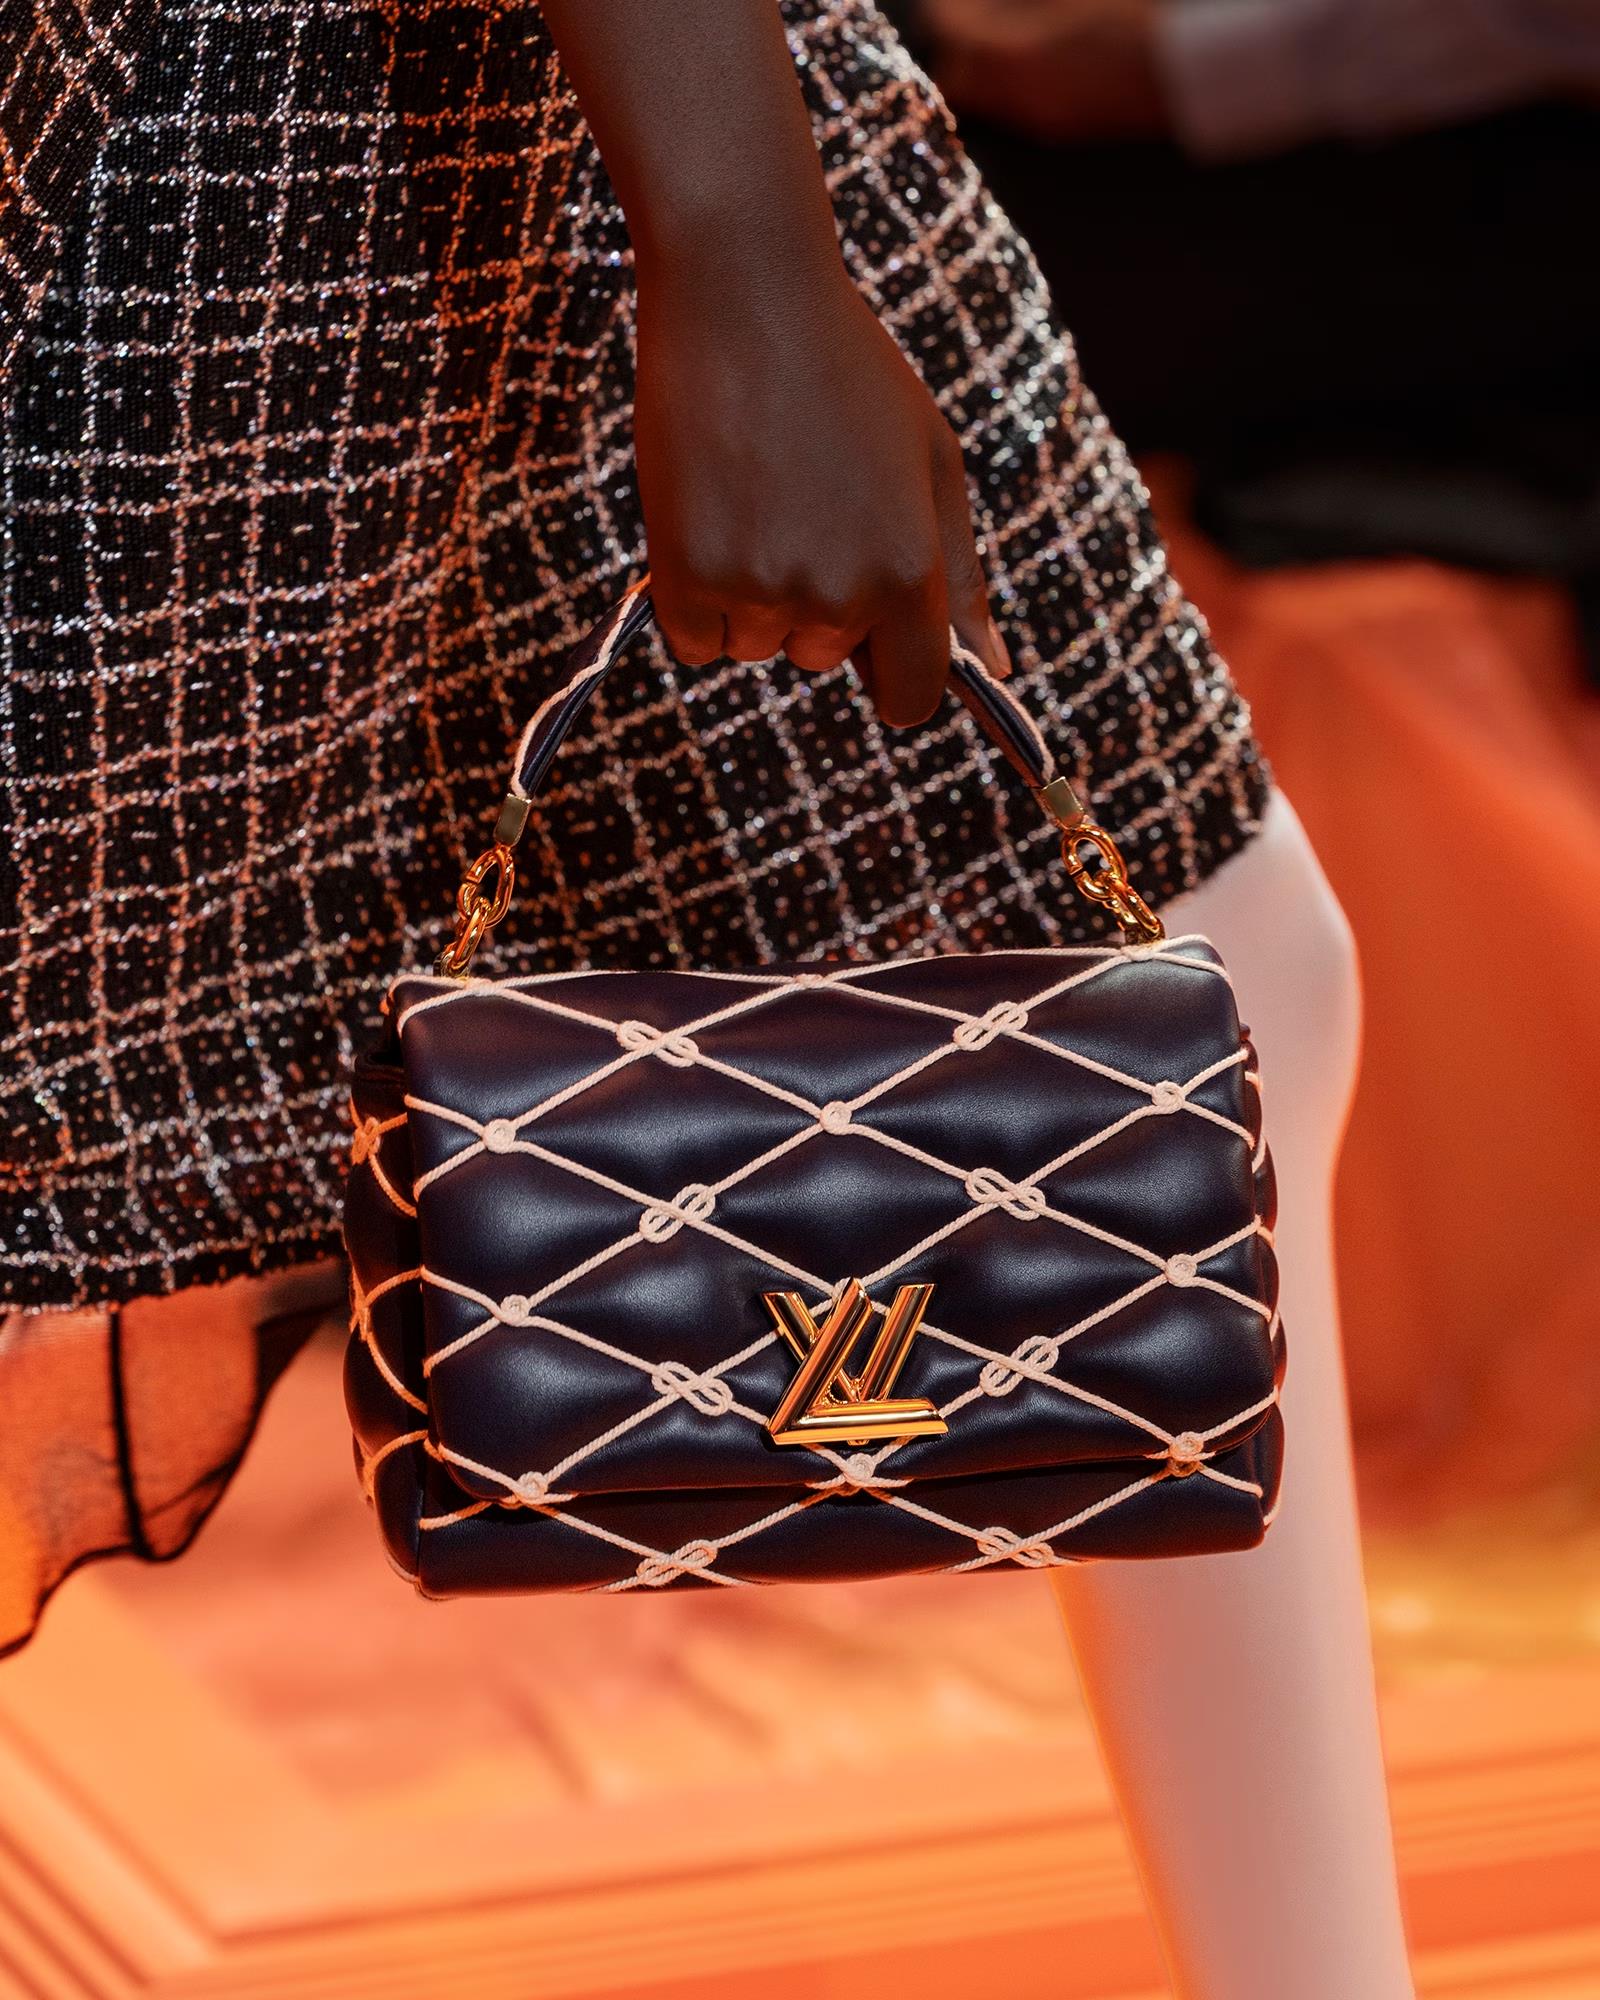 Khơi dậy cảm hứng viễn du với những mẫu túi mới nhất của Louis Vuitton - Ảnh 1.